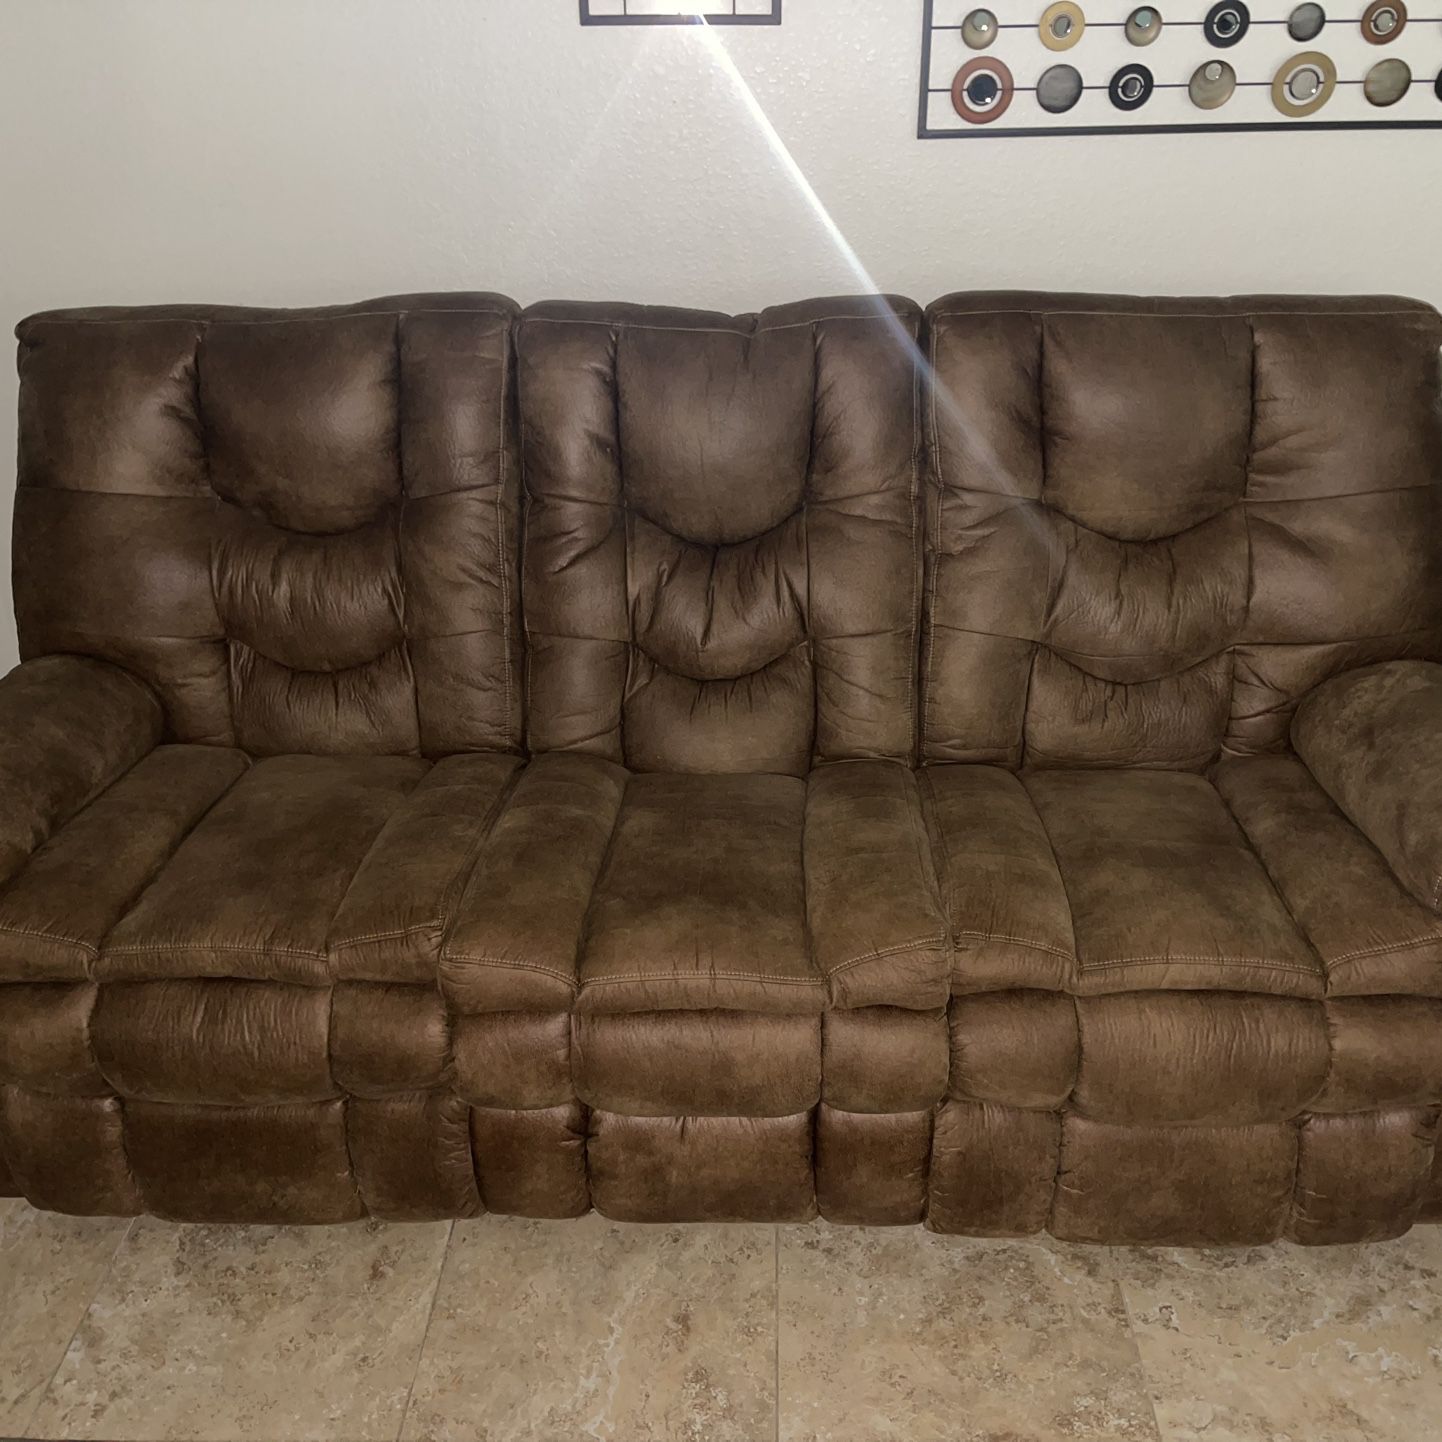 Sofa Recliner 